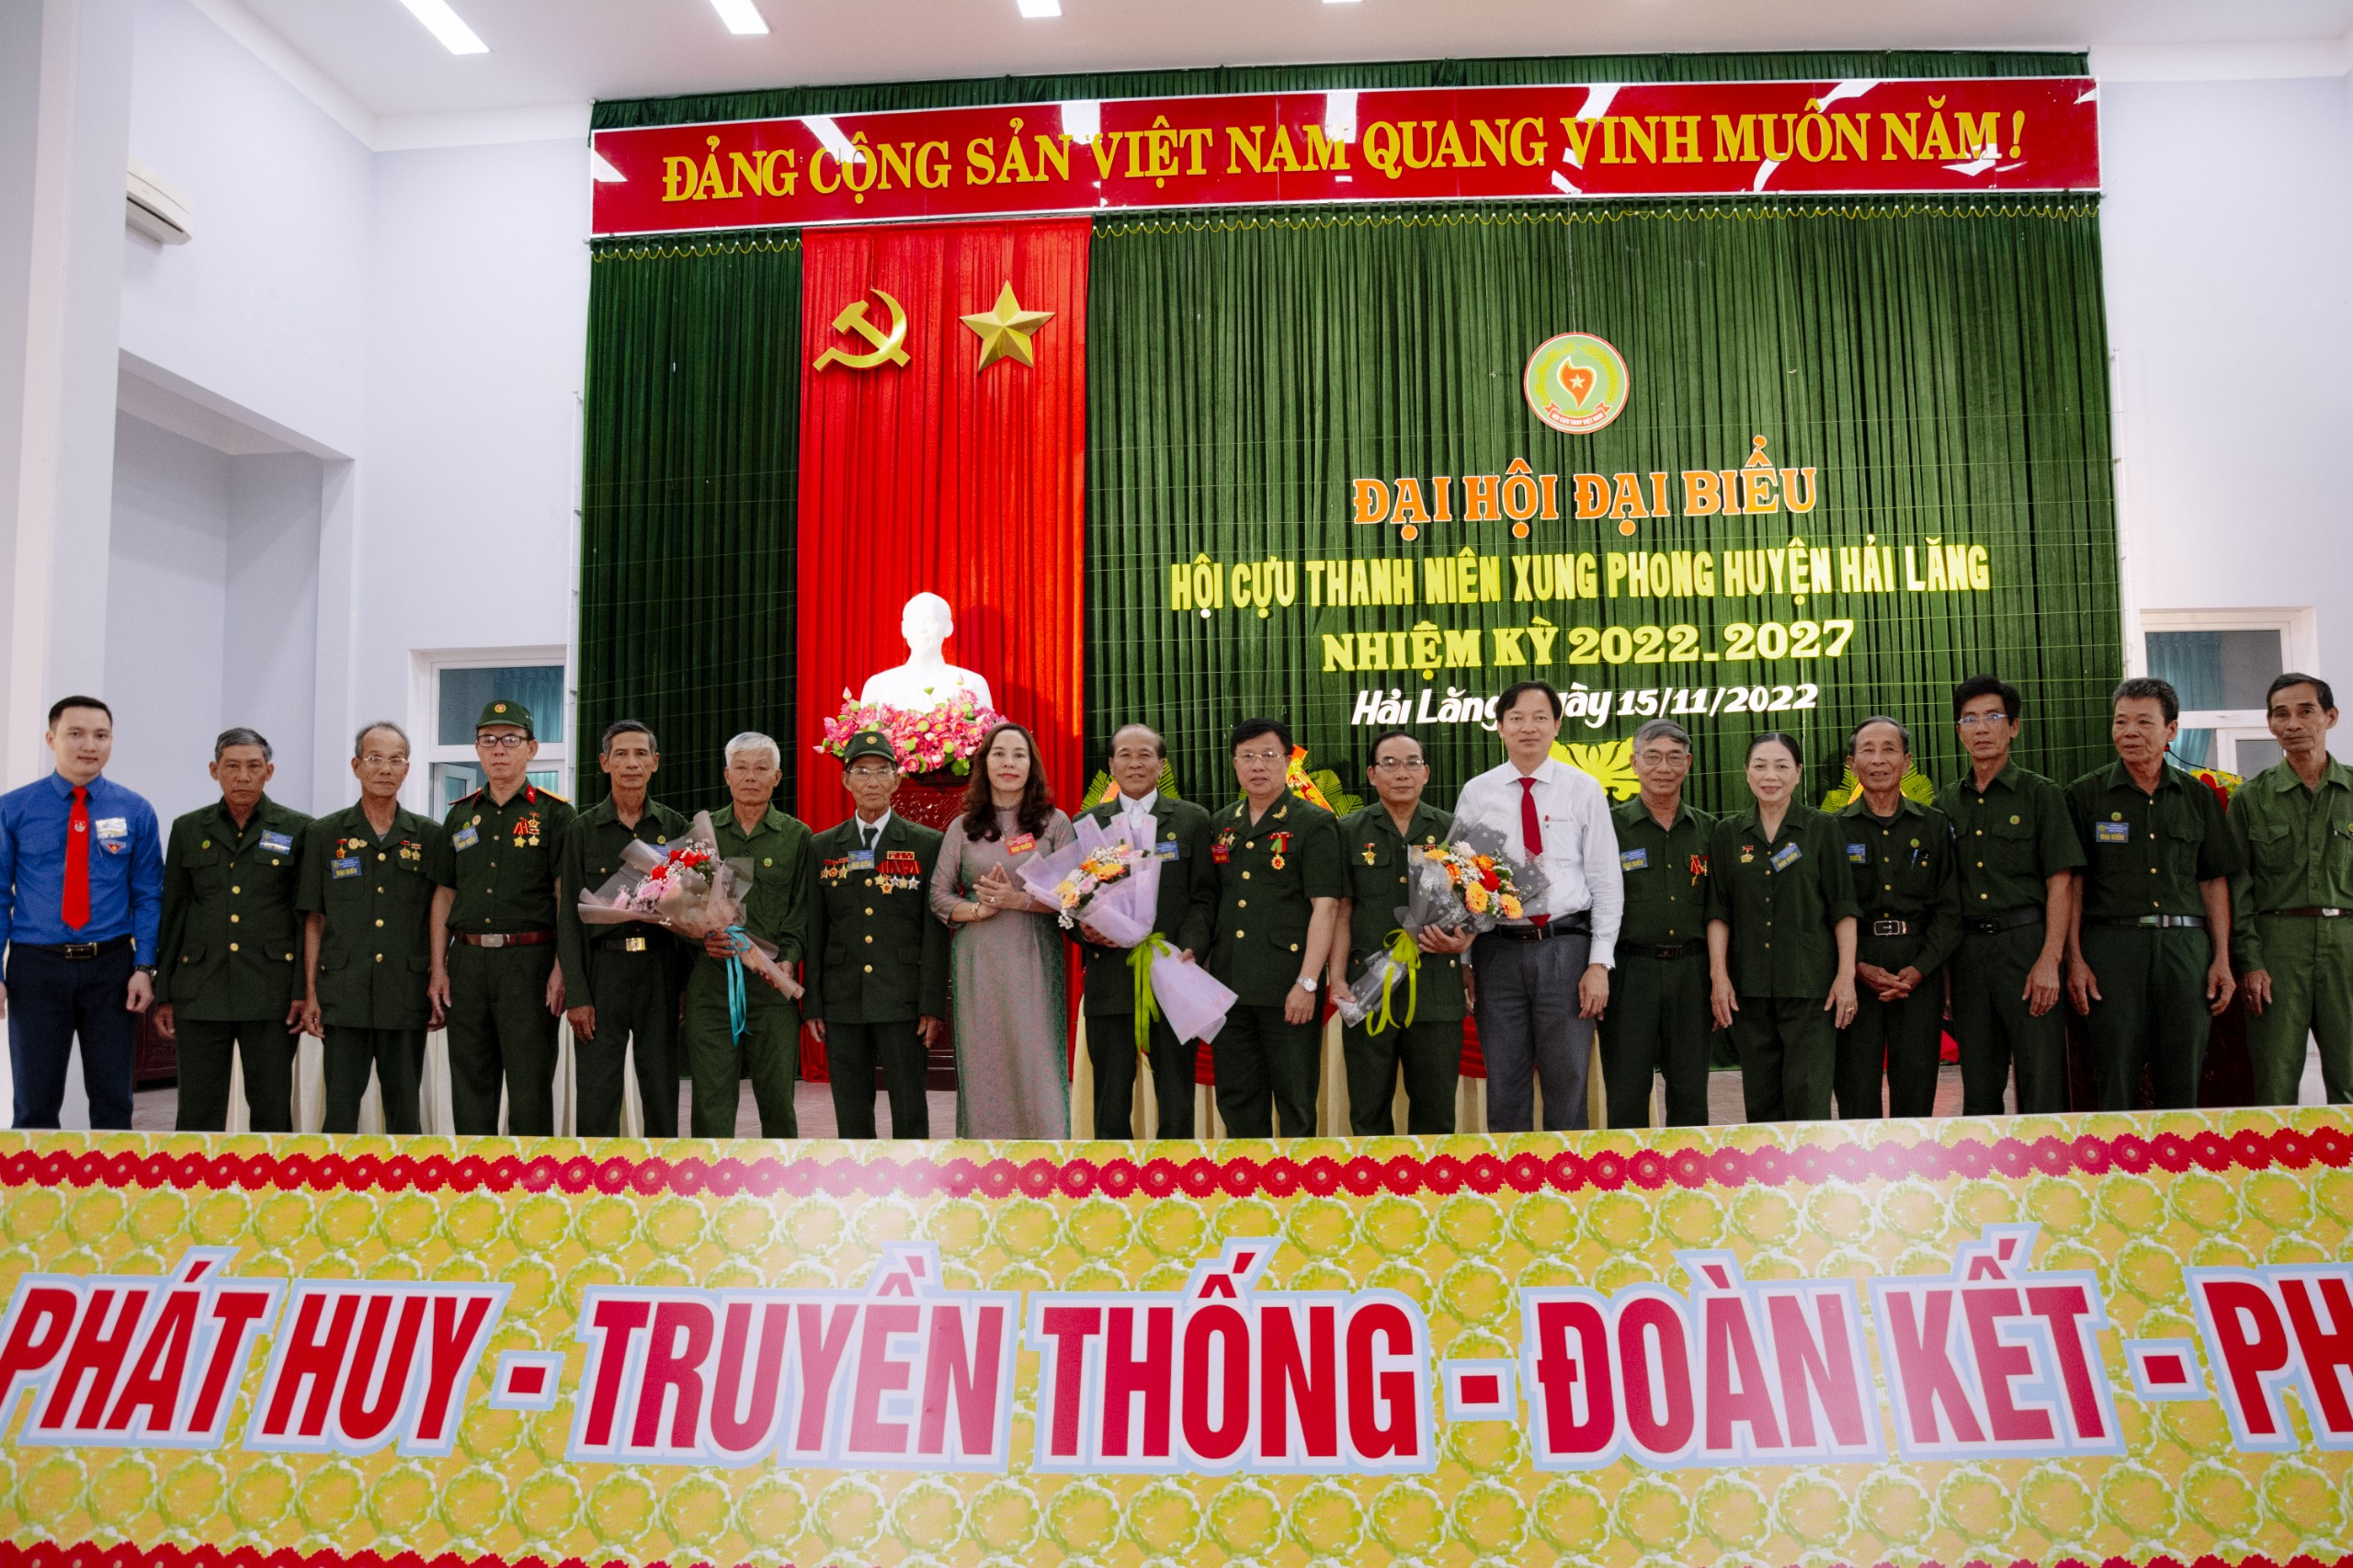 BCH Hội CTNXP huyện Hải Lăng, nhiệm kỳ 2022-2027 ra mắt nhận nhiệm vụ